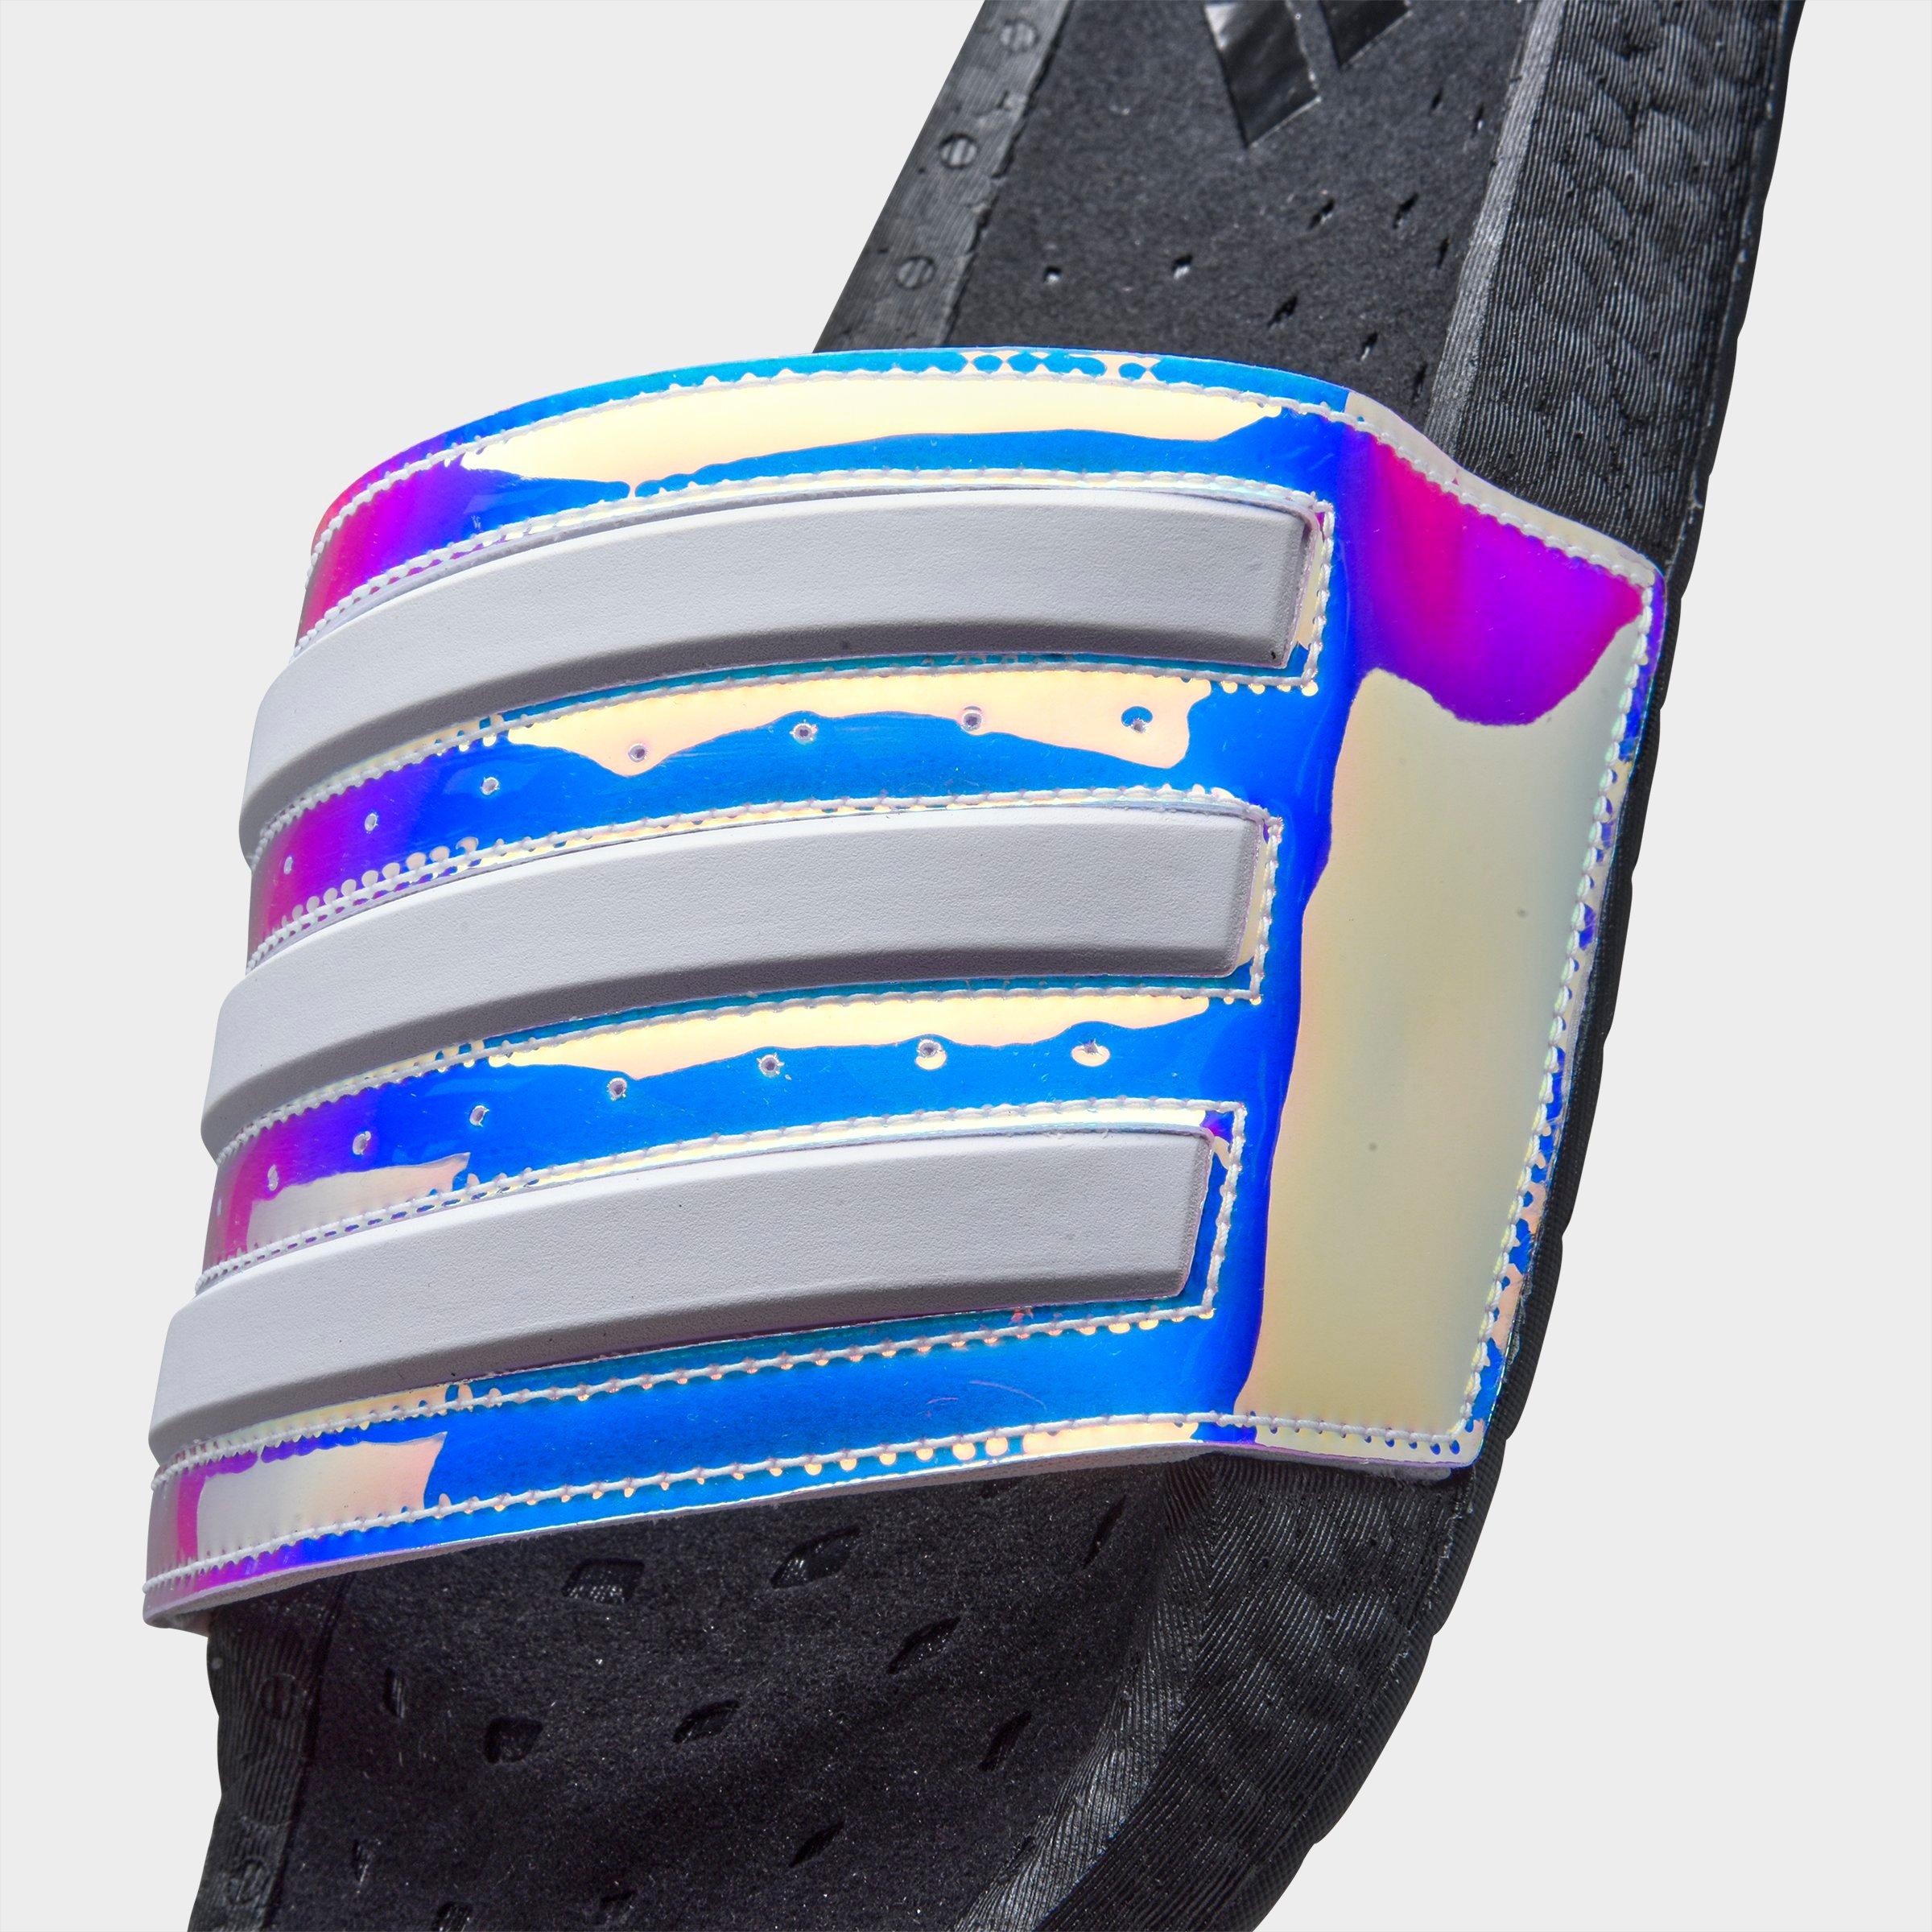 adidas iridescent slides